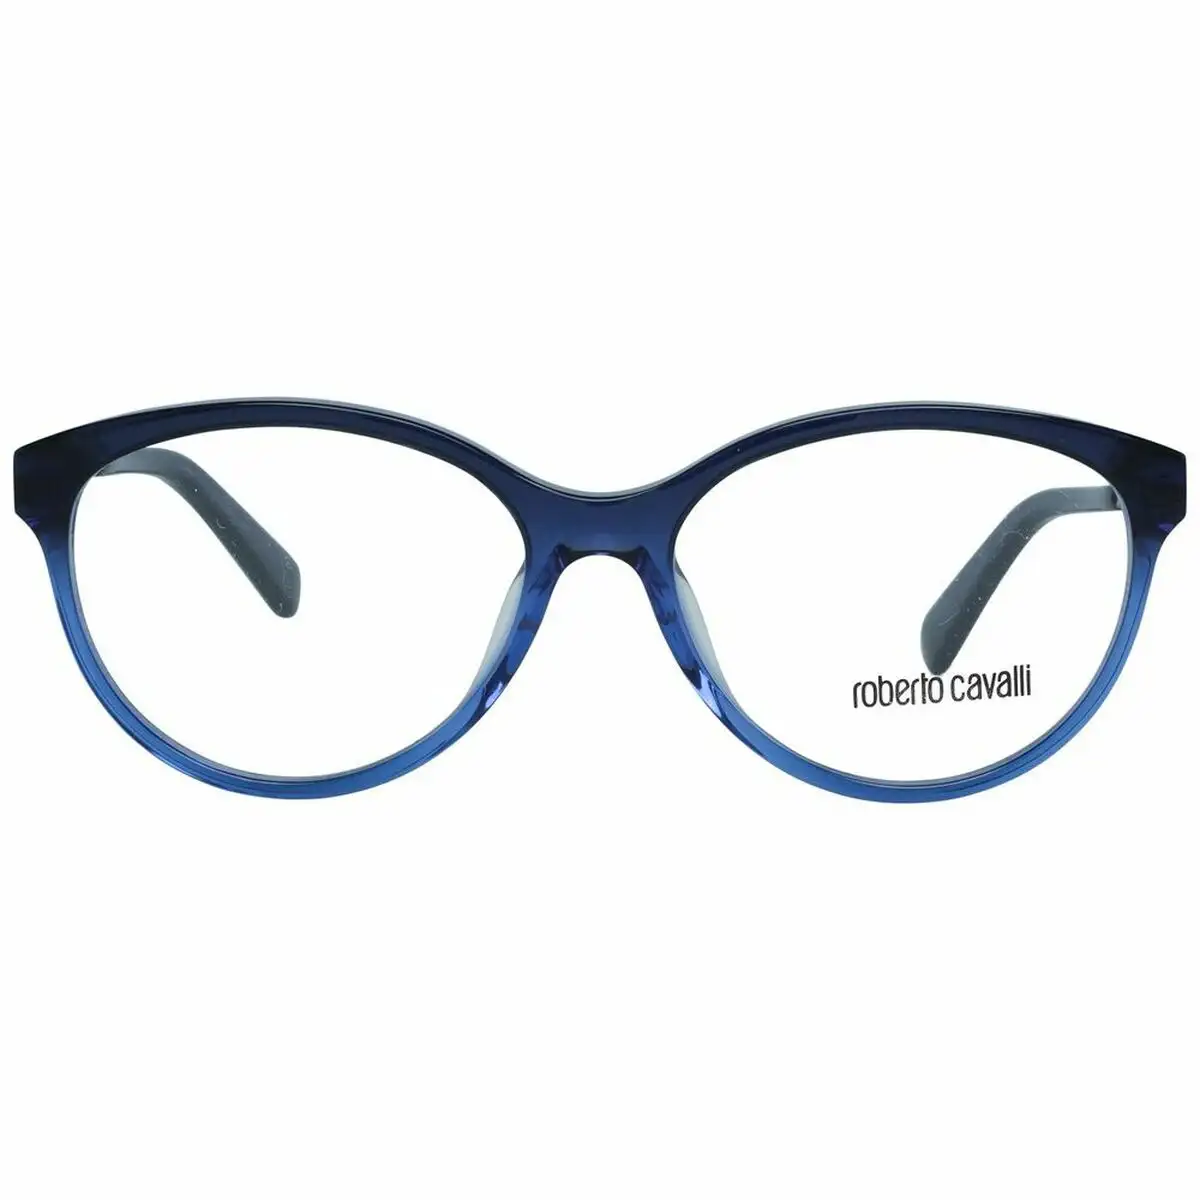 Monture de lunettes femme roberto cavalli rc5094 53092 bleu o 53 mm _8715. DIAYTAR SENEGAL - Votre Destination pour un Shopping Unique. Parcourez notre catalogue et trouvez des articles qui expriment votre singularité et votre style.